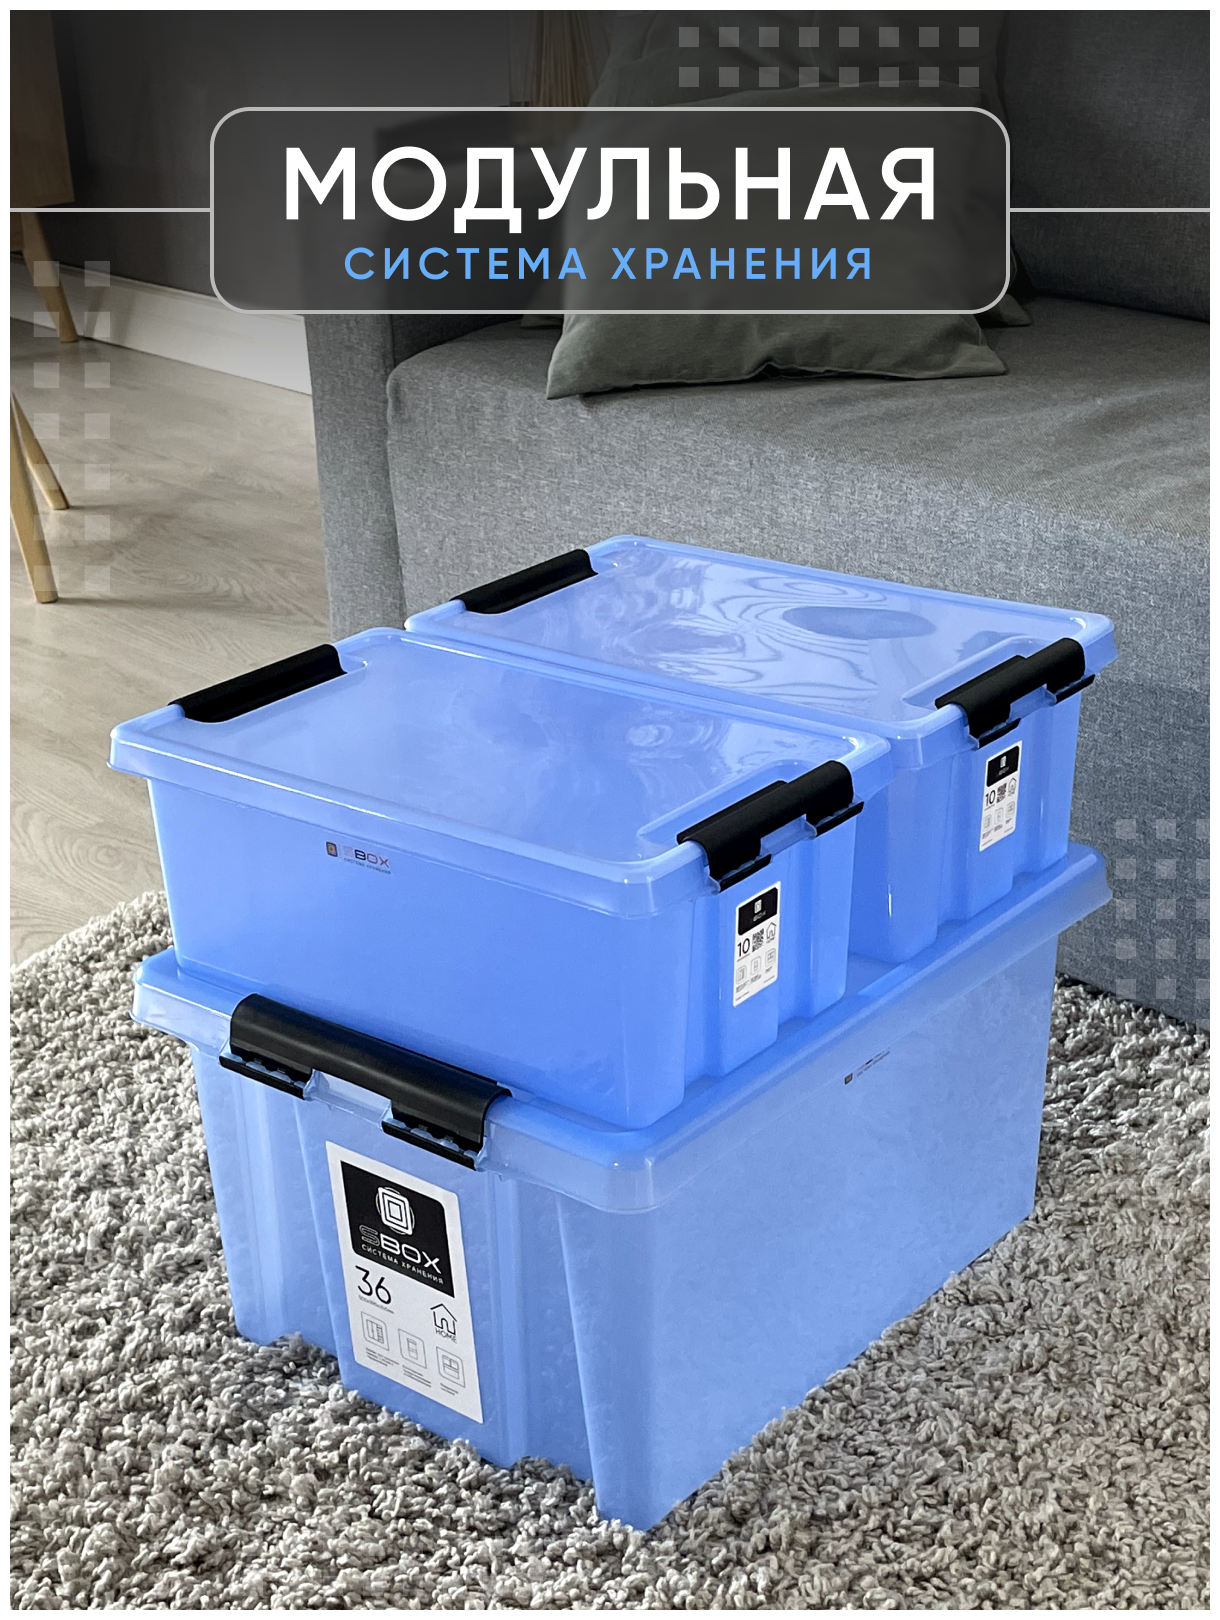 Контейнер пластиковый прозрачный синий с крышкой на защелках для хранения вещей, продуктов или игрушек, емкость 36л, набор 3 шт, SBOX - фотография № 7